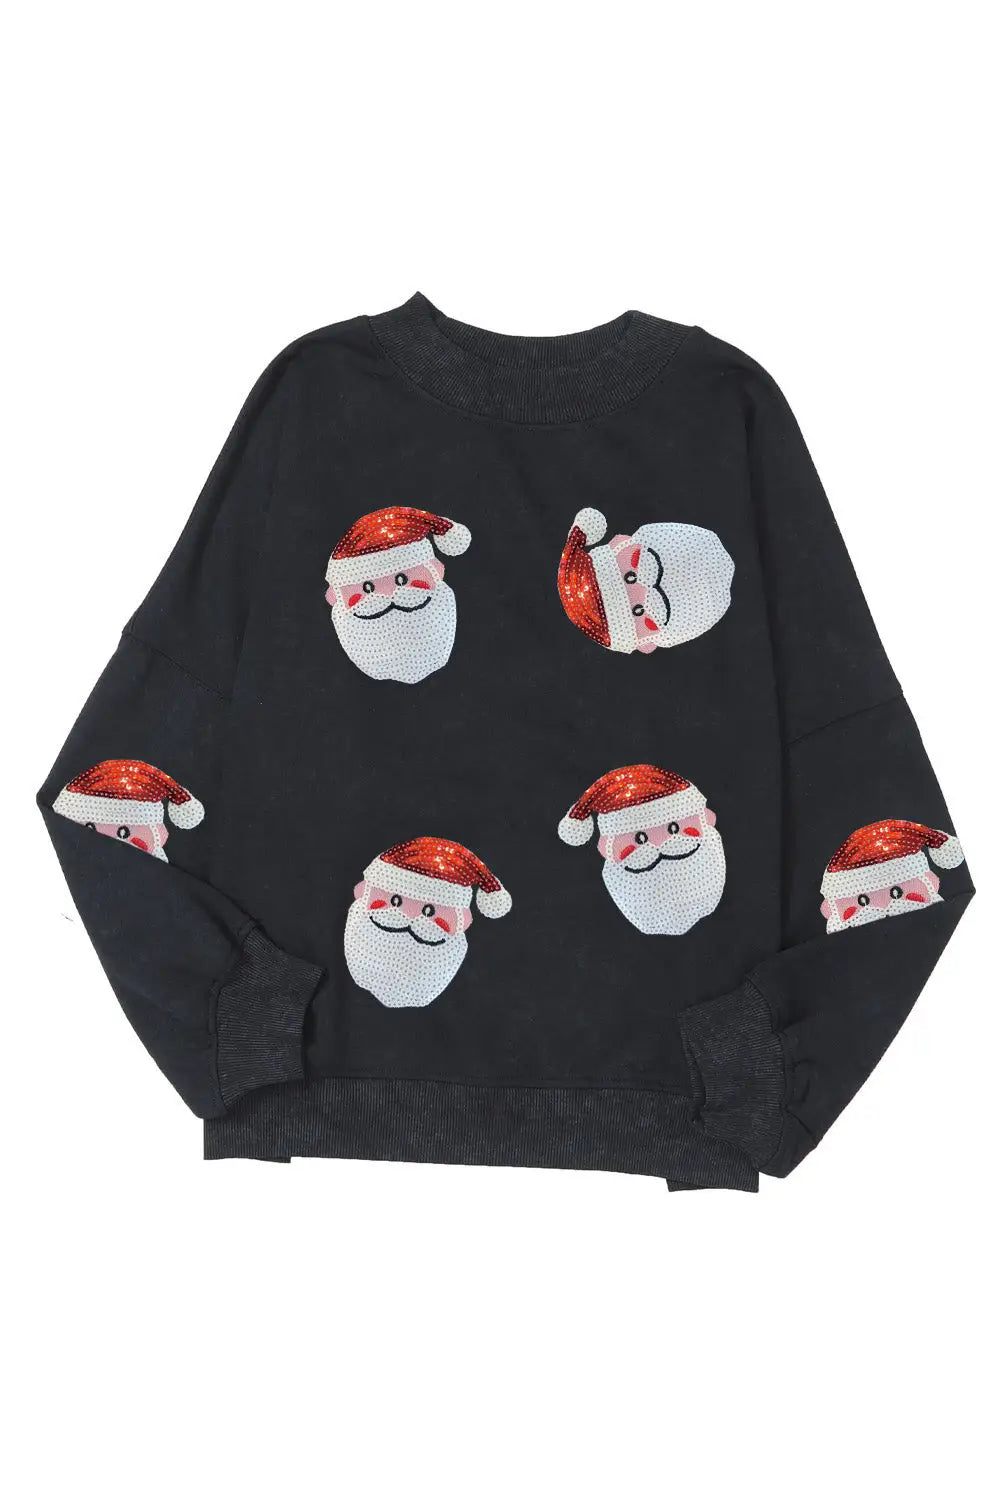 Black sequined santa claus christmas fashion sweatshirt - graphic sweatshirts